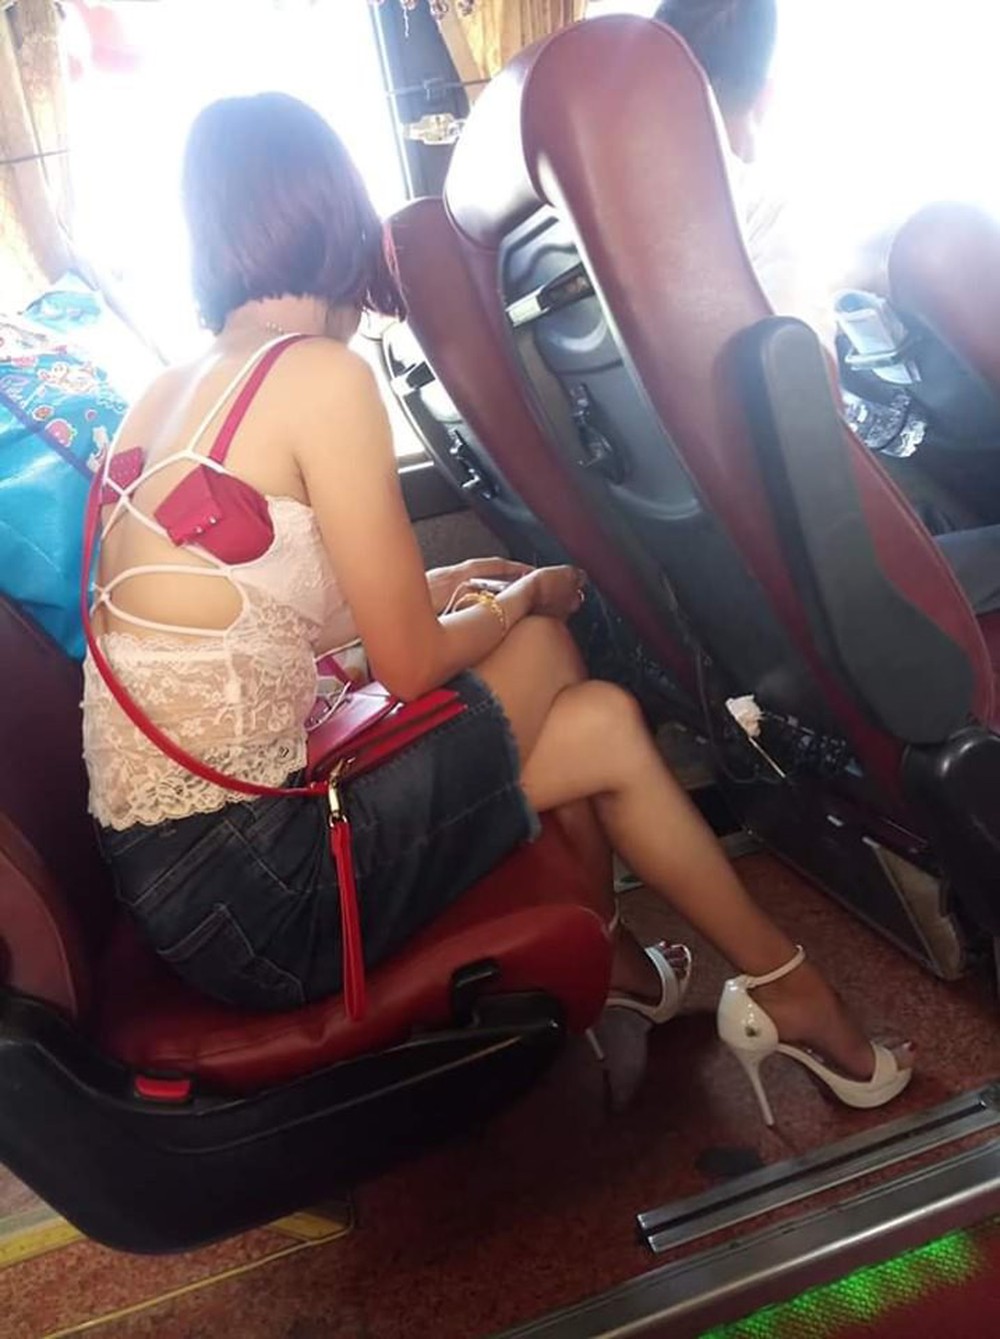 Ngồi trên xe khách, một phụ nữ có cách ăn mặc khiến tất cả phải ngượng chín mặt quay đi - Ảnh 2.